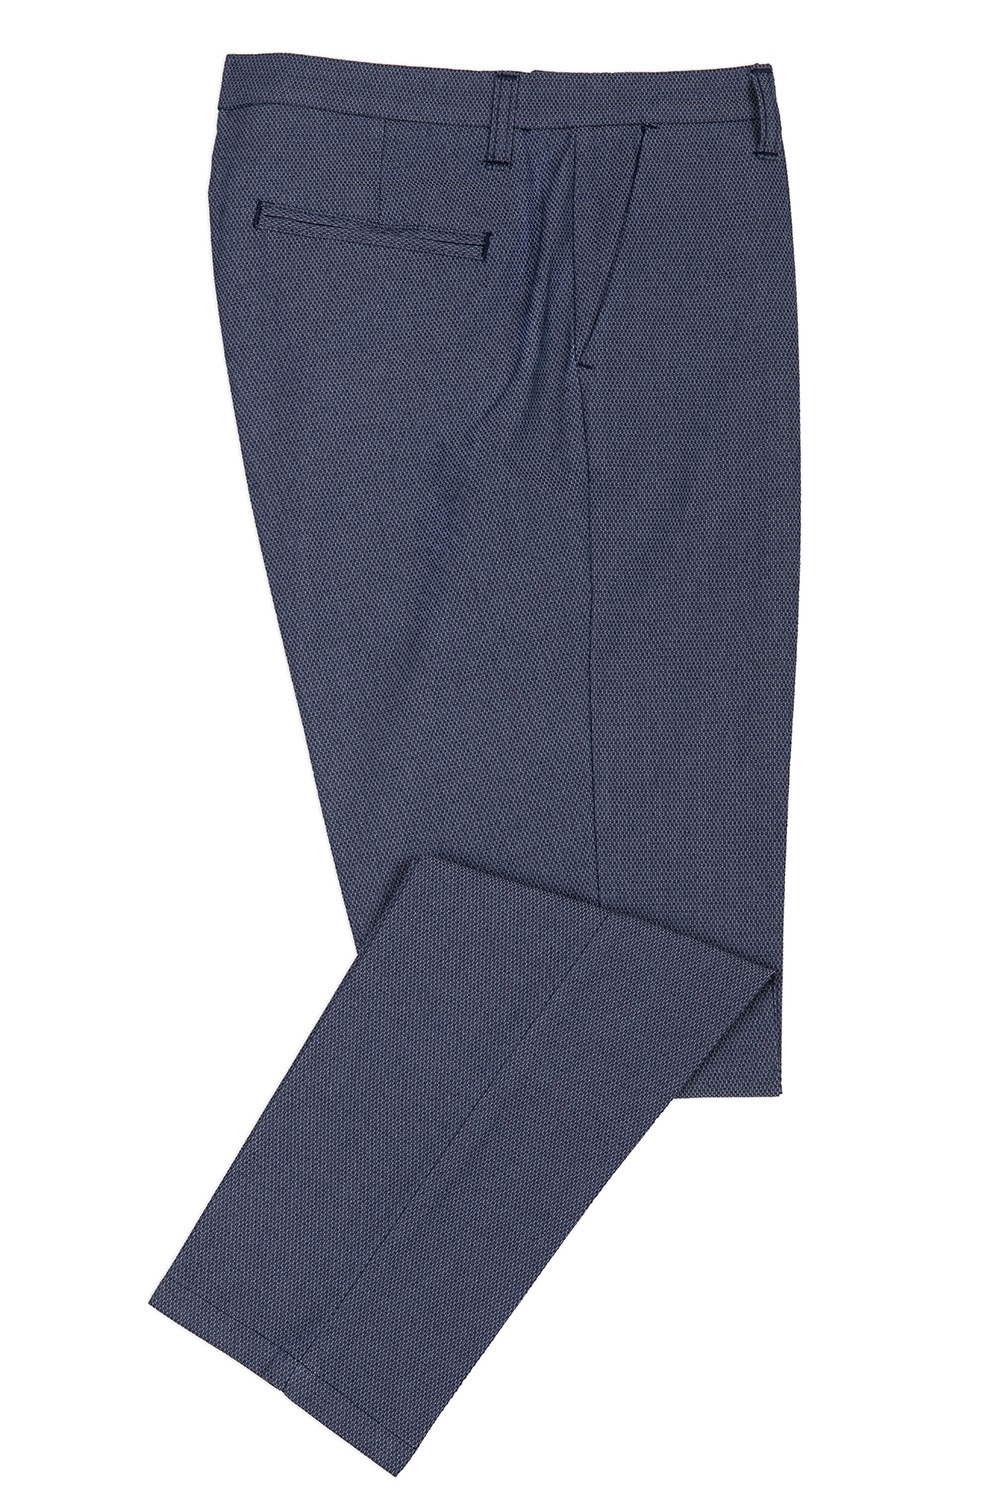 Pantaloni albastri print geometric 0